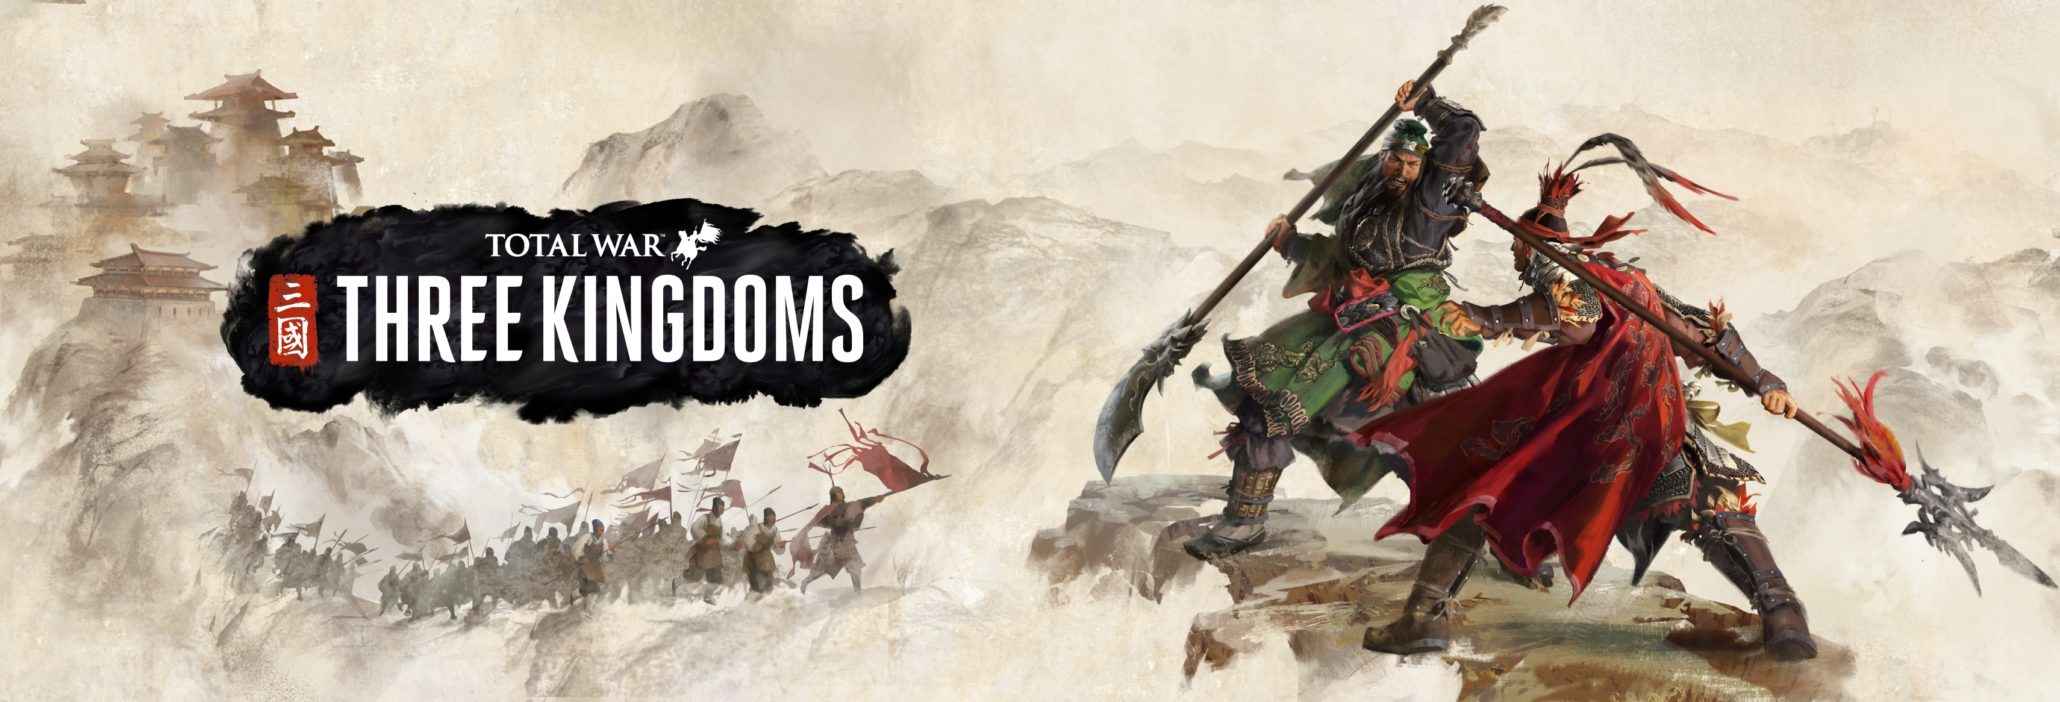 Total War THREE KINGDOMS Download – Full Turkish + All DLC